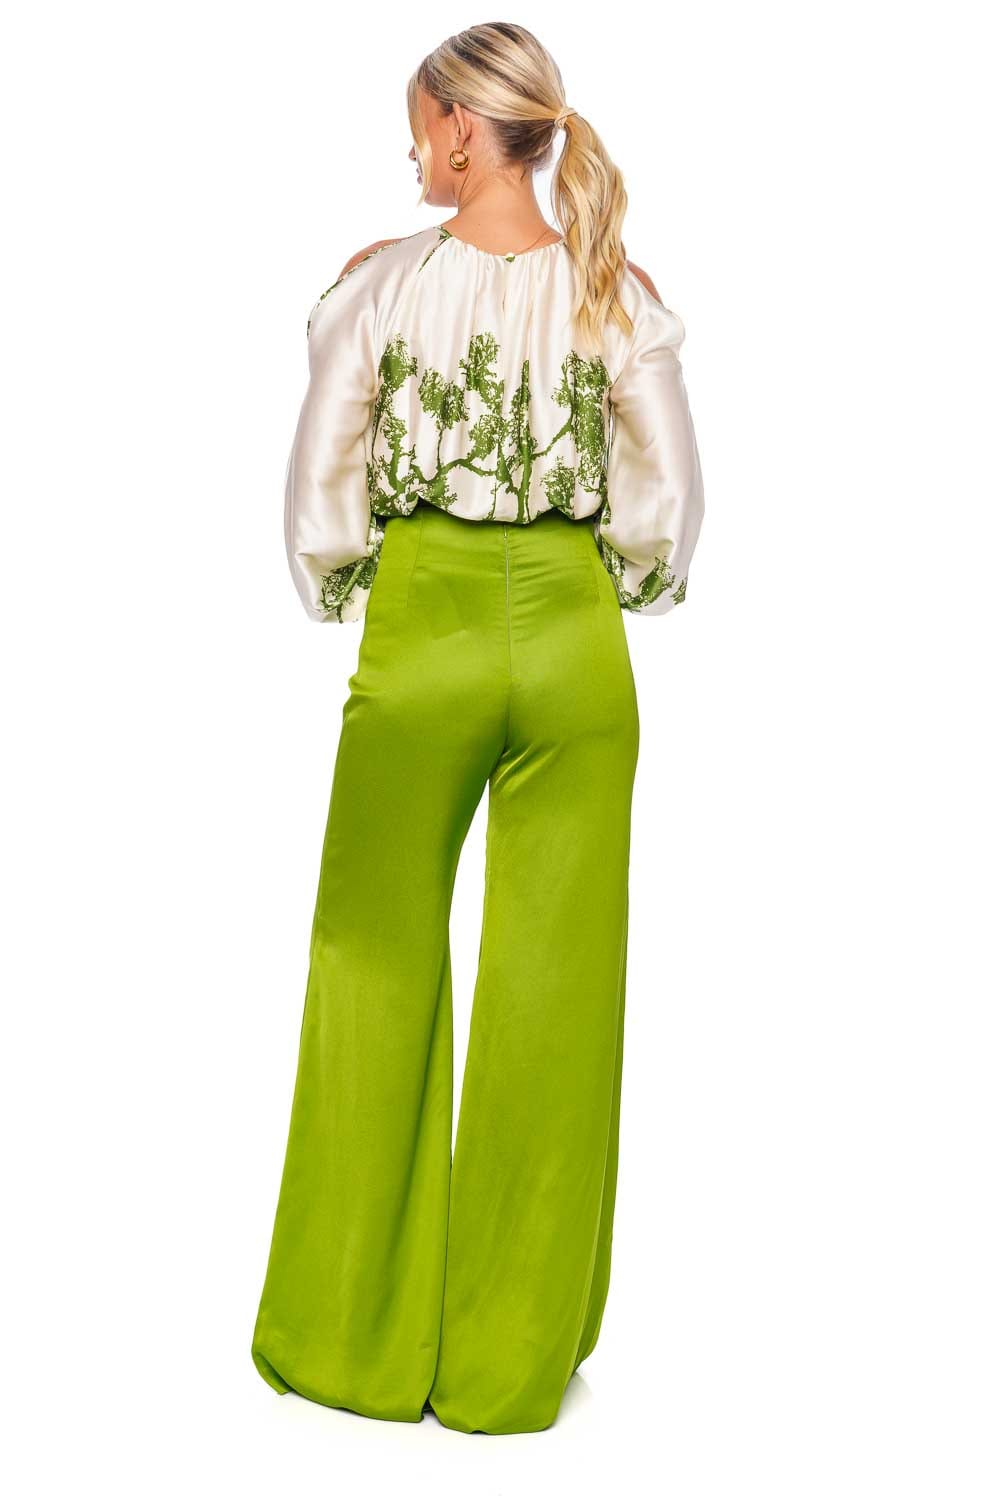 Silvia Tcherassi Elke Green Cyprus Cropped Stretch Silk Top